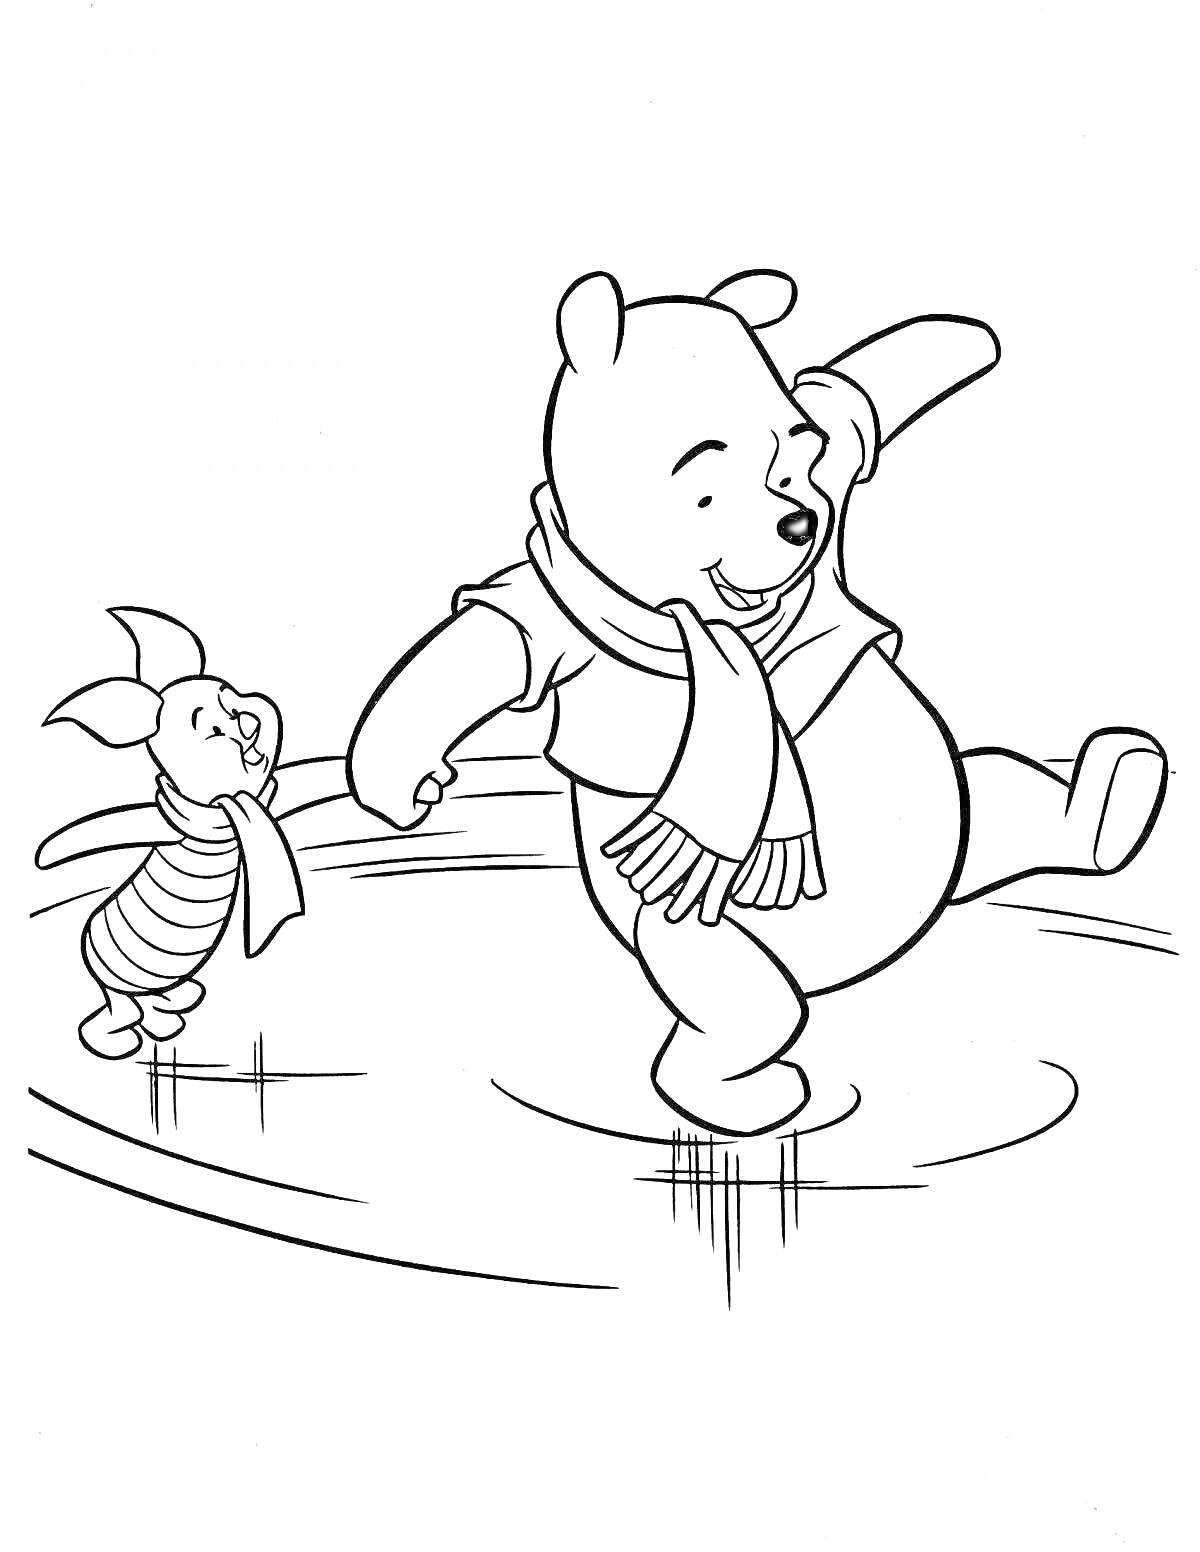 Раскраска Пятачок и Медвежонок с шарфиком, катающиеся на коньках